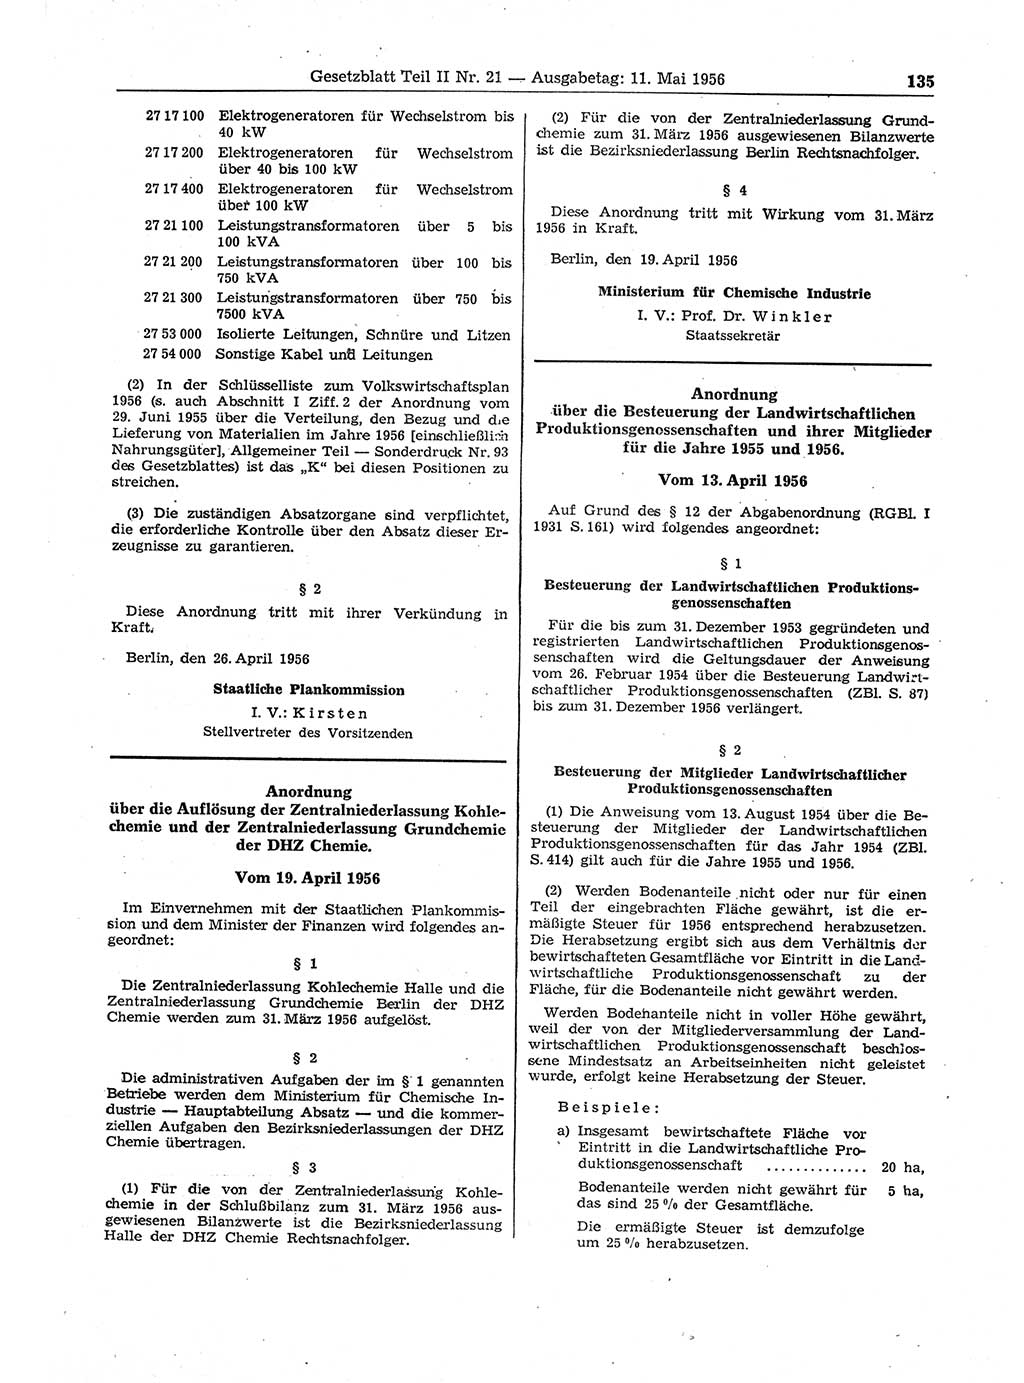 Gesetzblatt (GBl.) der Deutschen Demokratischen Republik (DDR) Teil ⅠⅠ 1956, Seite 135 (GBl. DDR ⅠⅠ 1956, S. 135)